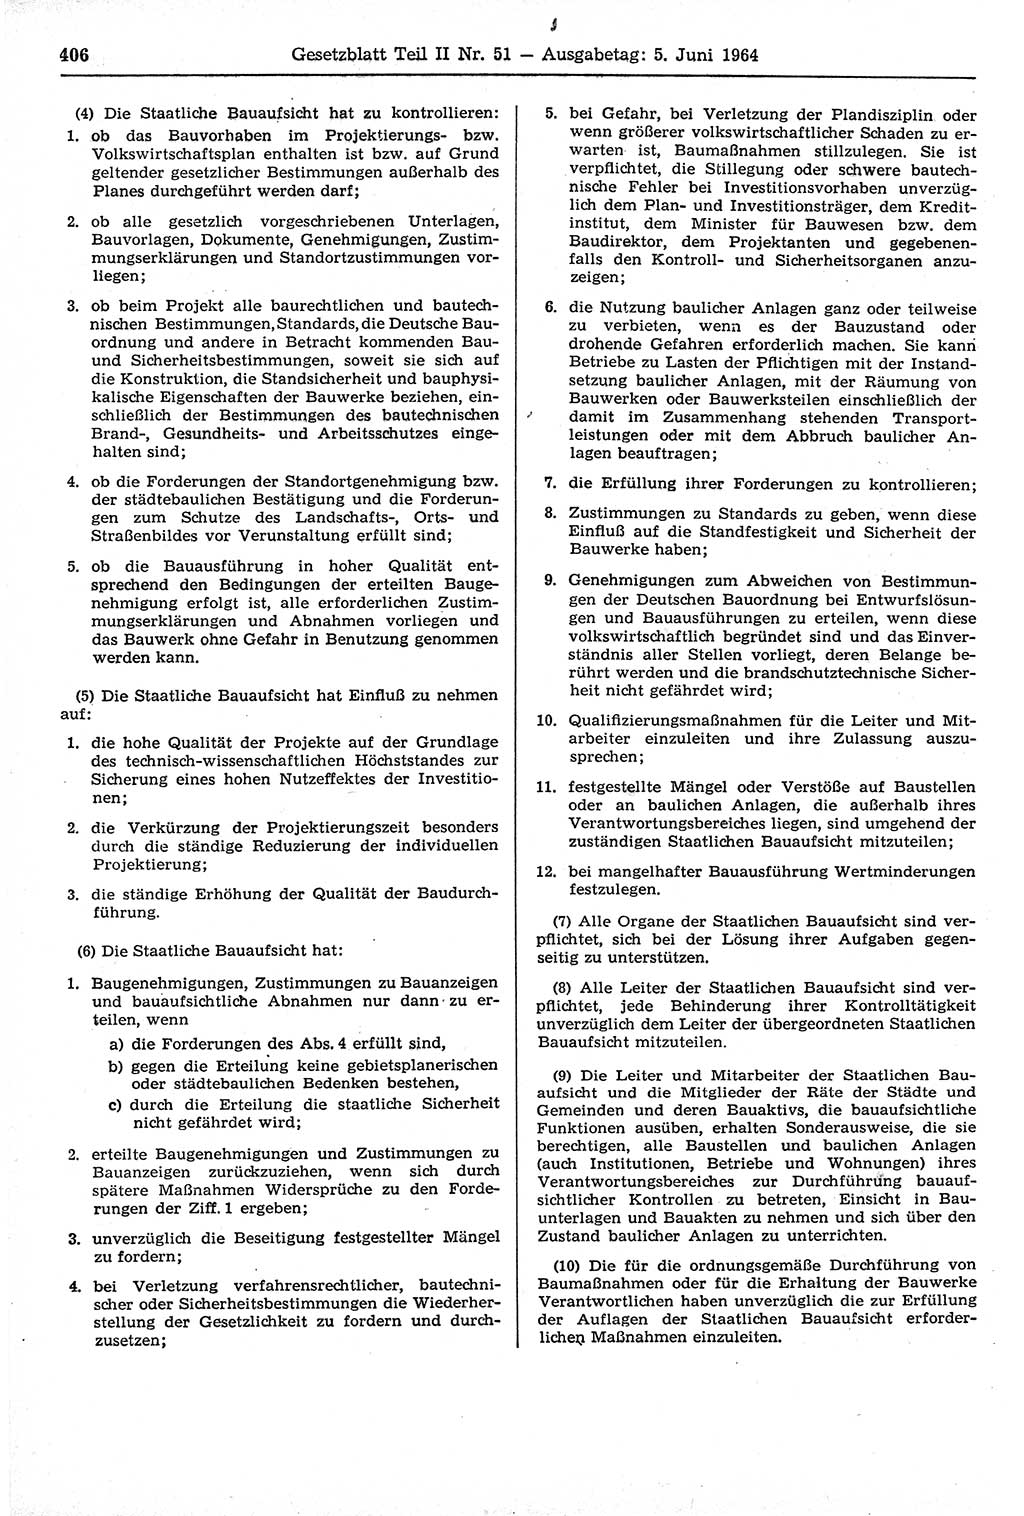 Gesetzblatt (GBl.) der Deutschen Demokratischen Republik (DDR) Teil ⅠⅠ 1964, Seite 406 (GBl. DDR ⅠⅠ 1964, S. 406)